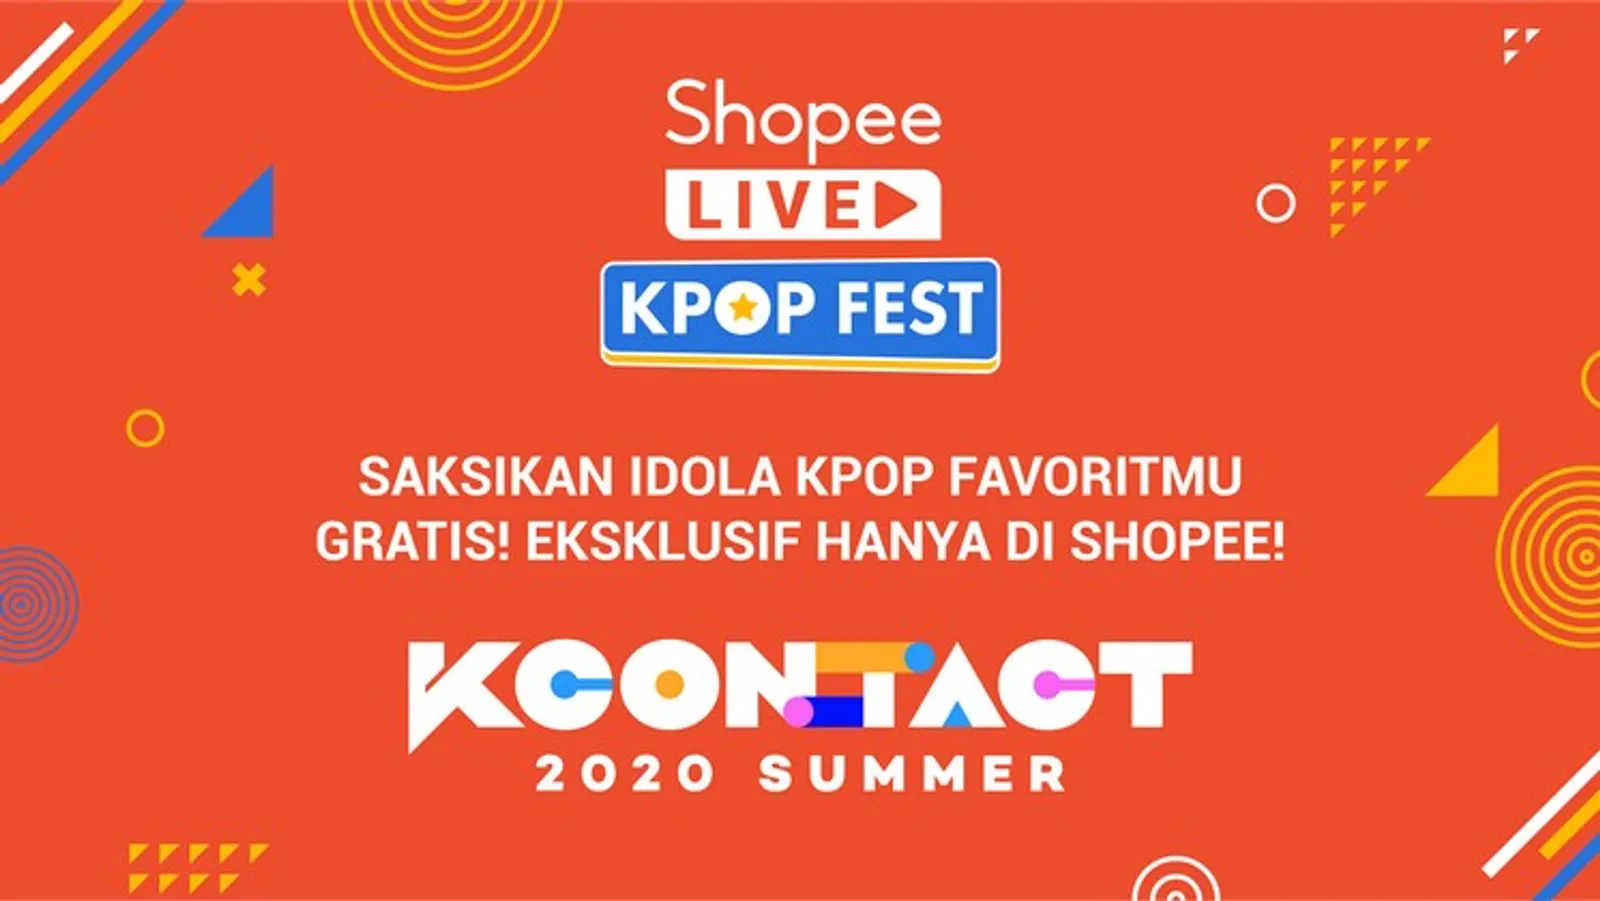 Seru Banget, Nantikan KCON 2020 di Shopee Live Kpop Fest, GRATIS!